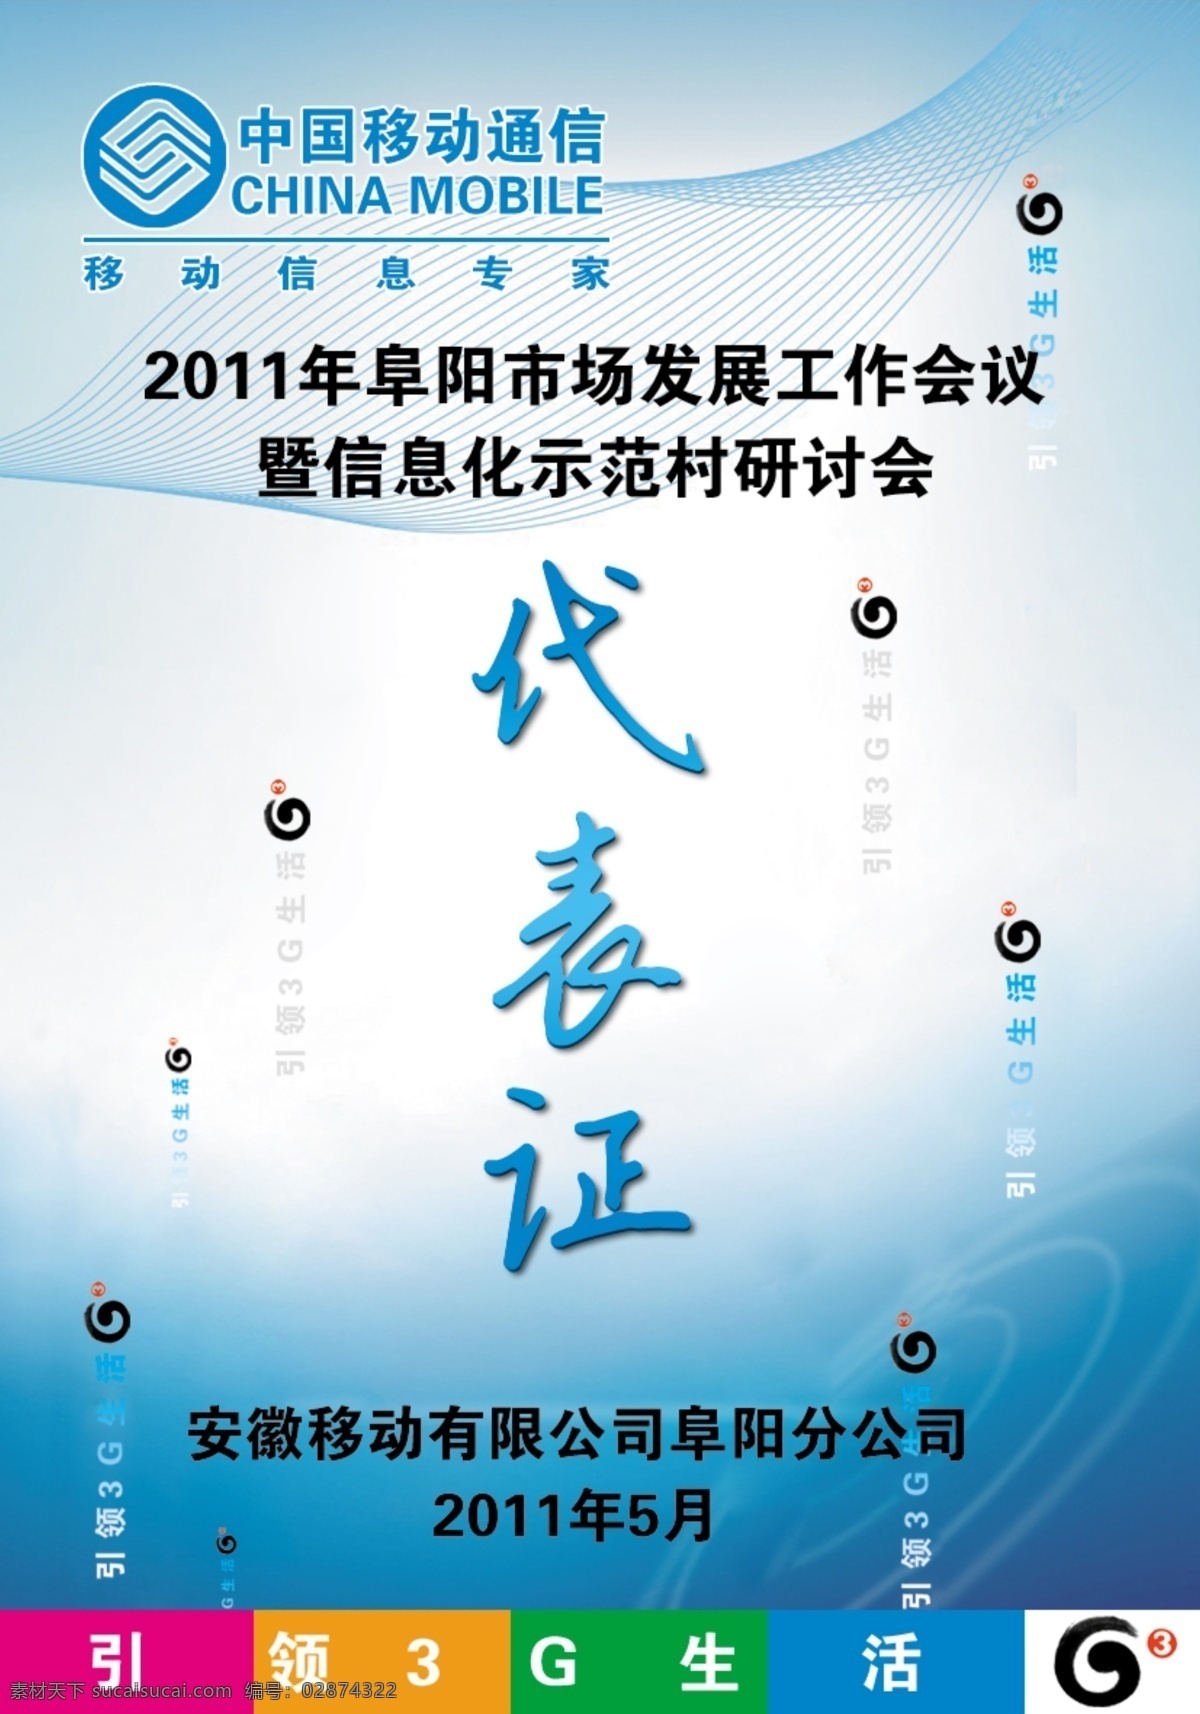 代表证 3g logo psd分层 分层 标志 蓝色 源文件 中国移动 矢量图 现代科技